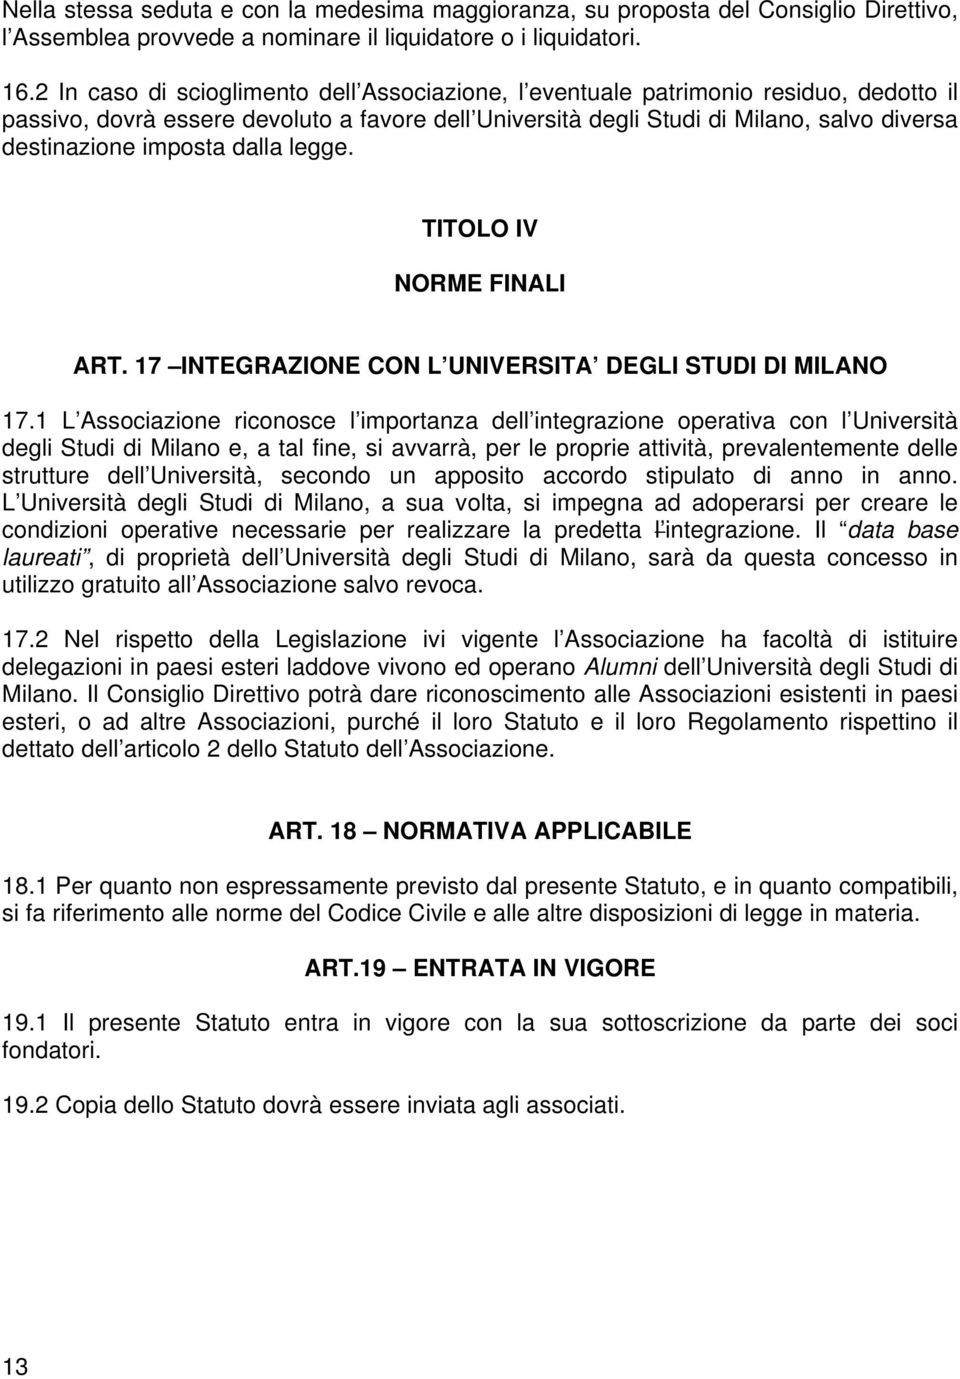 imposta dalla legge. TITOLO IV NORME FINALI ART. 17 INTEGRAZIONE CON L UNIVERSITA DEGLI STUDI DI MILANO 17.